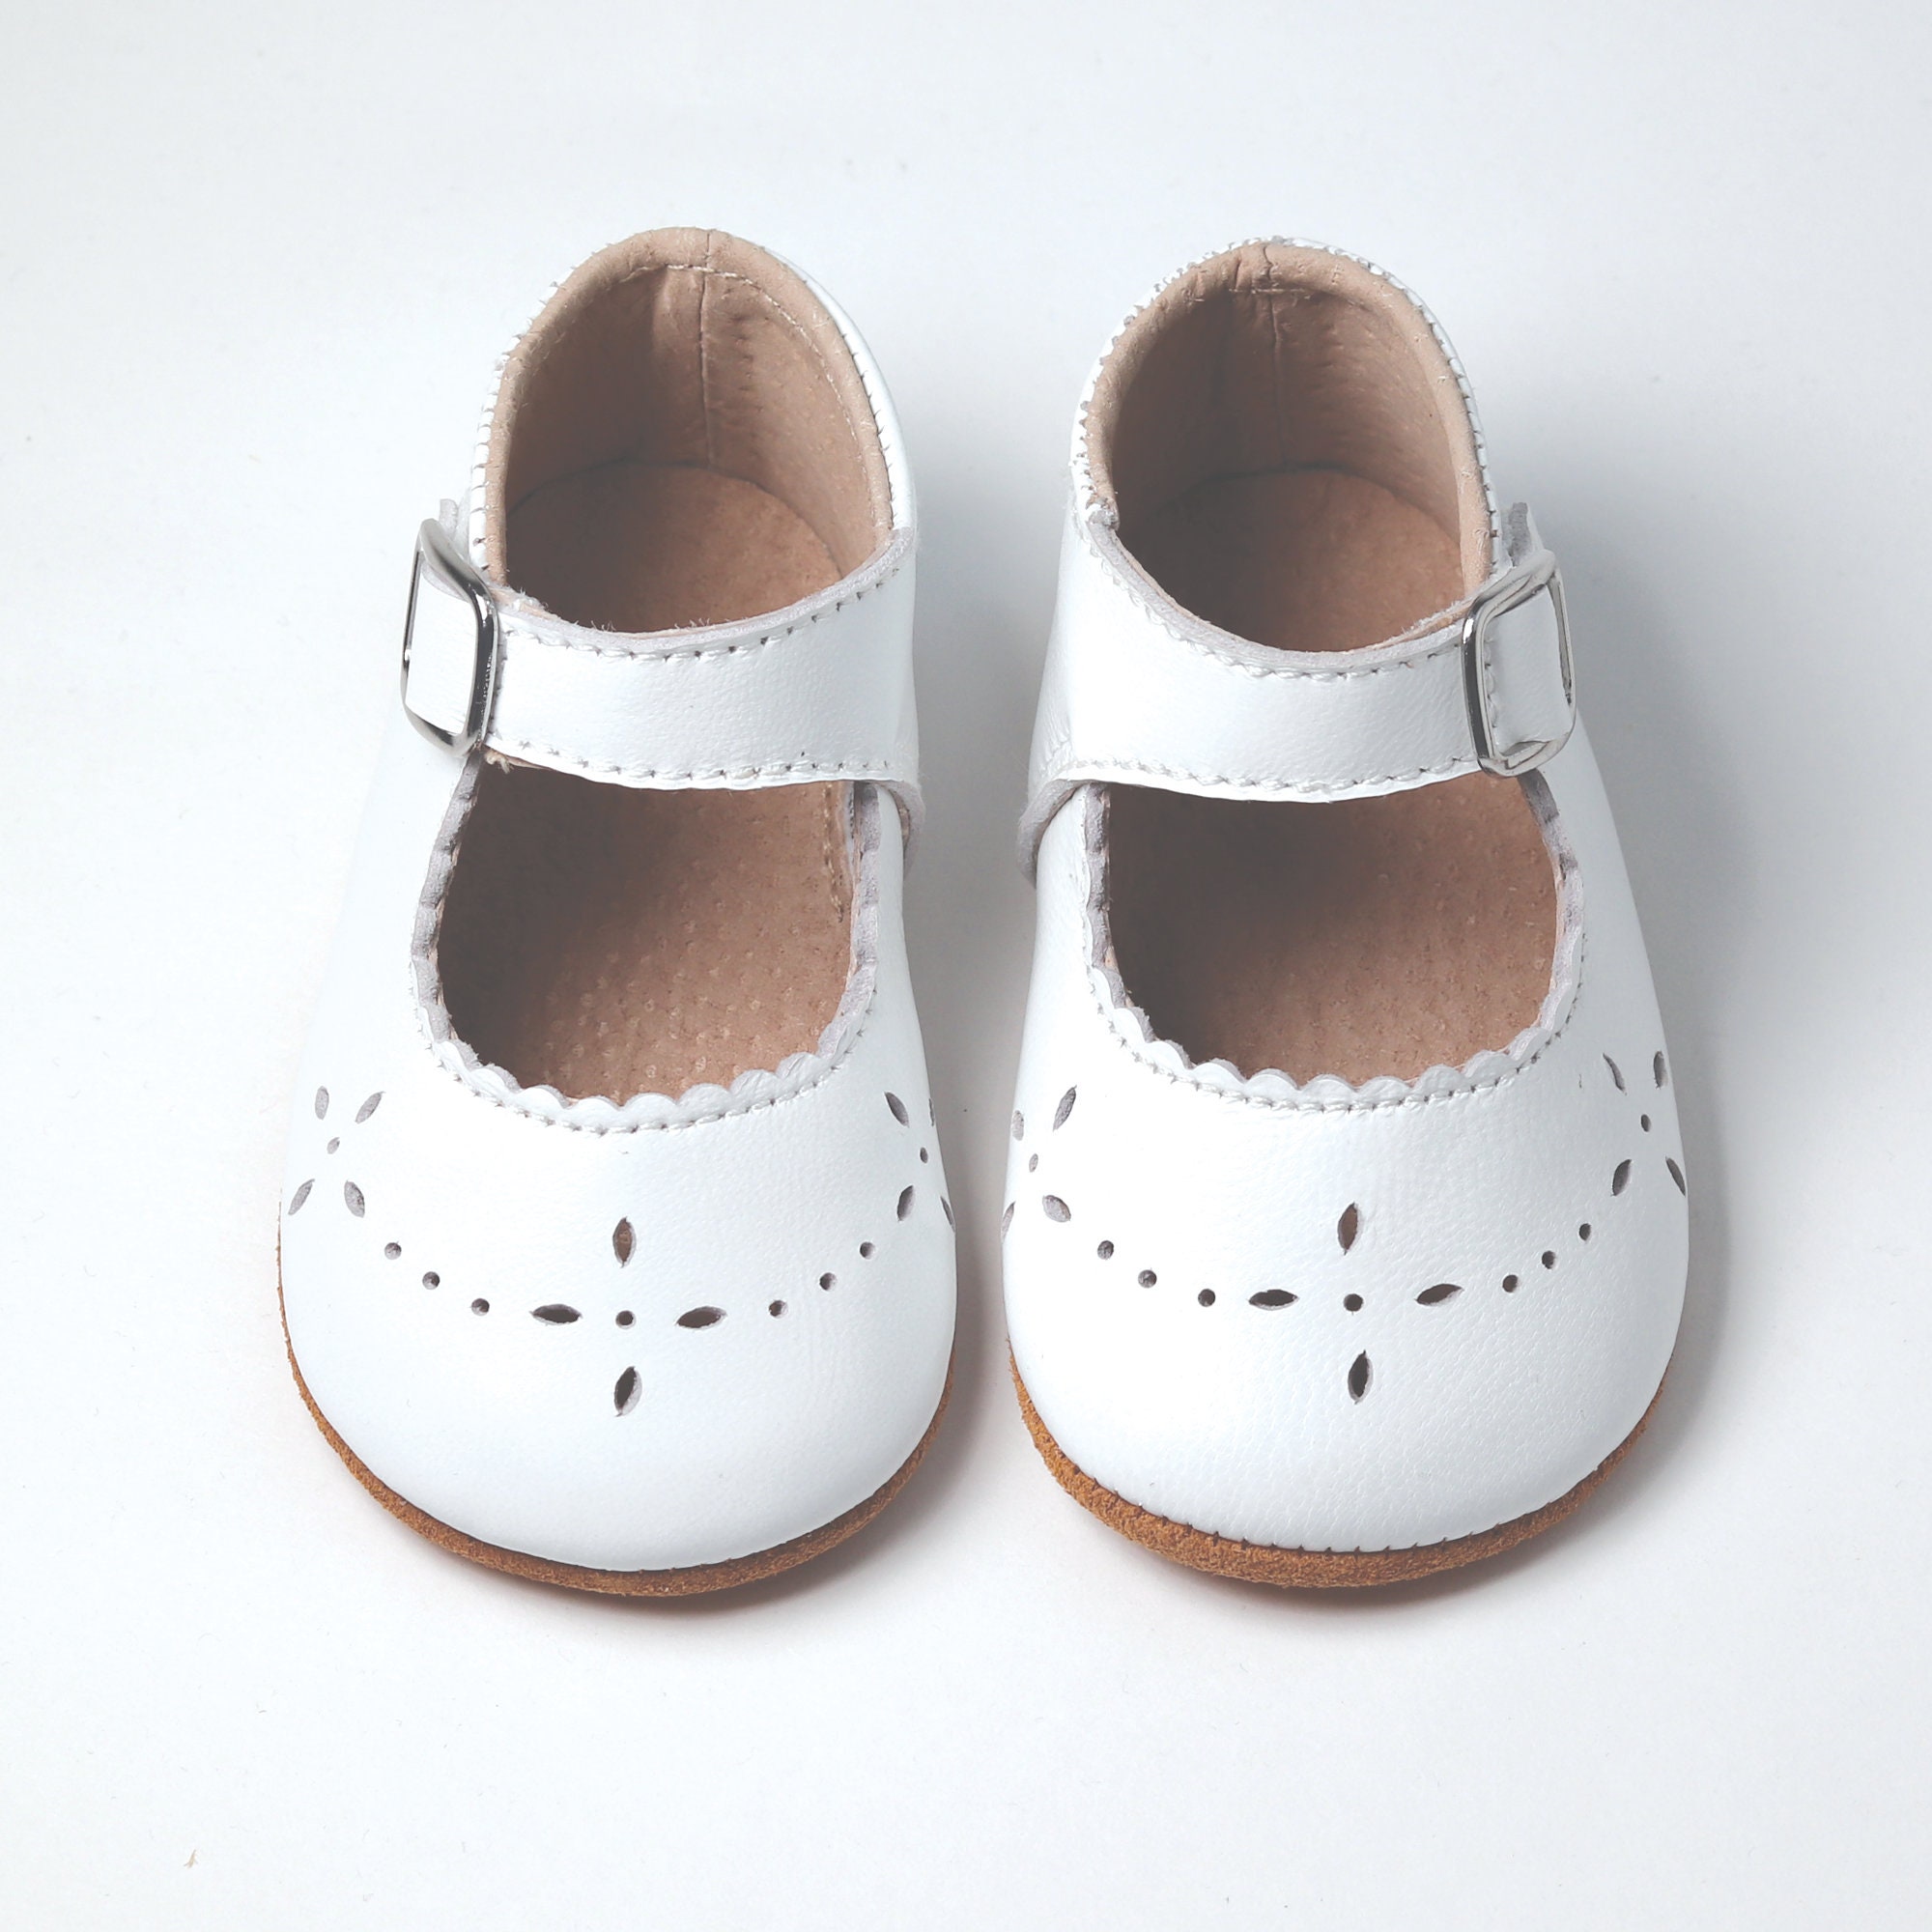 doopcadeau Schoenen Meisjesschoenen Mary Janes baby trouwschoenen baby doopschoenen doop baby schoenen peuter witte schoenen Wit meisje mary jane schoenen 